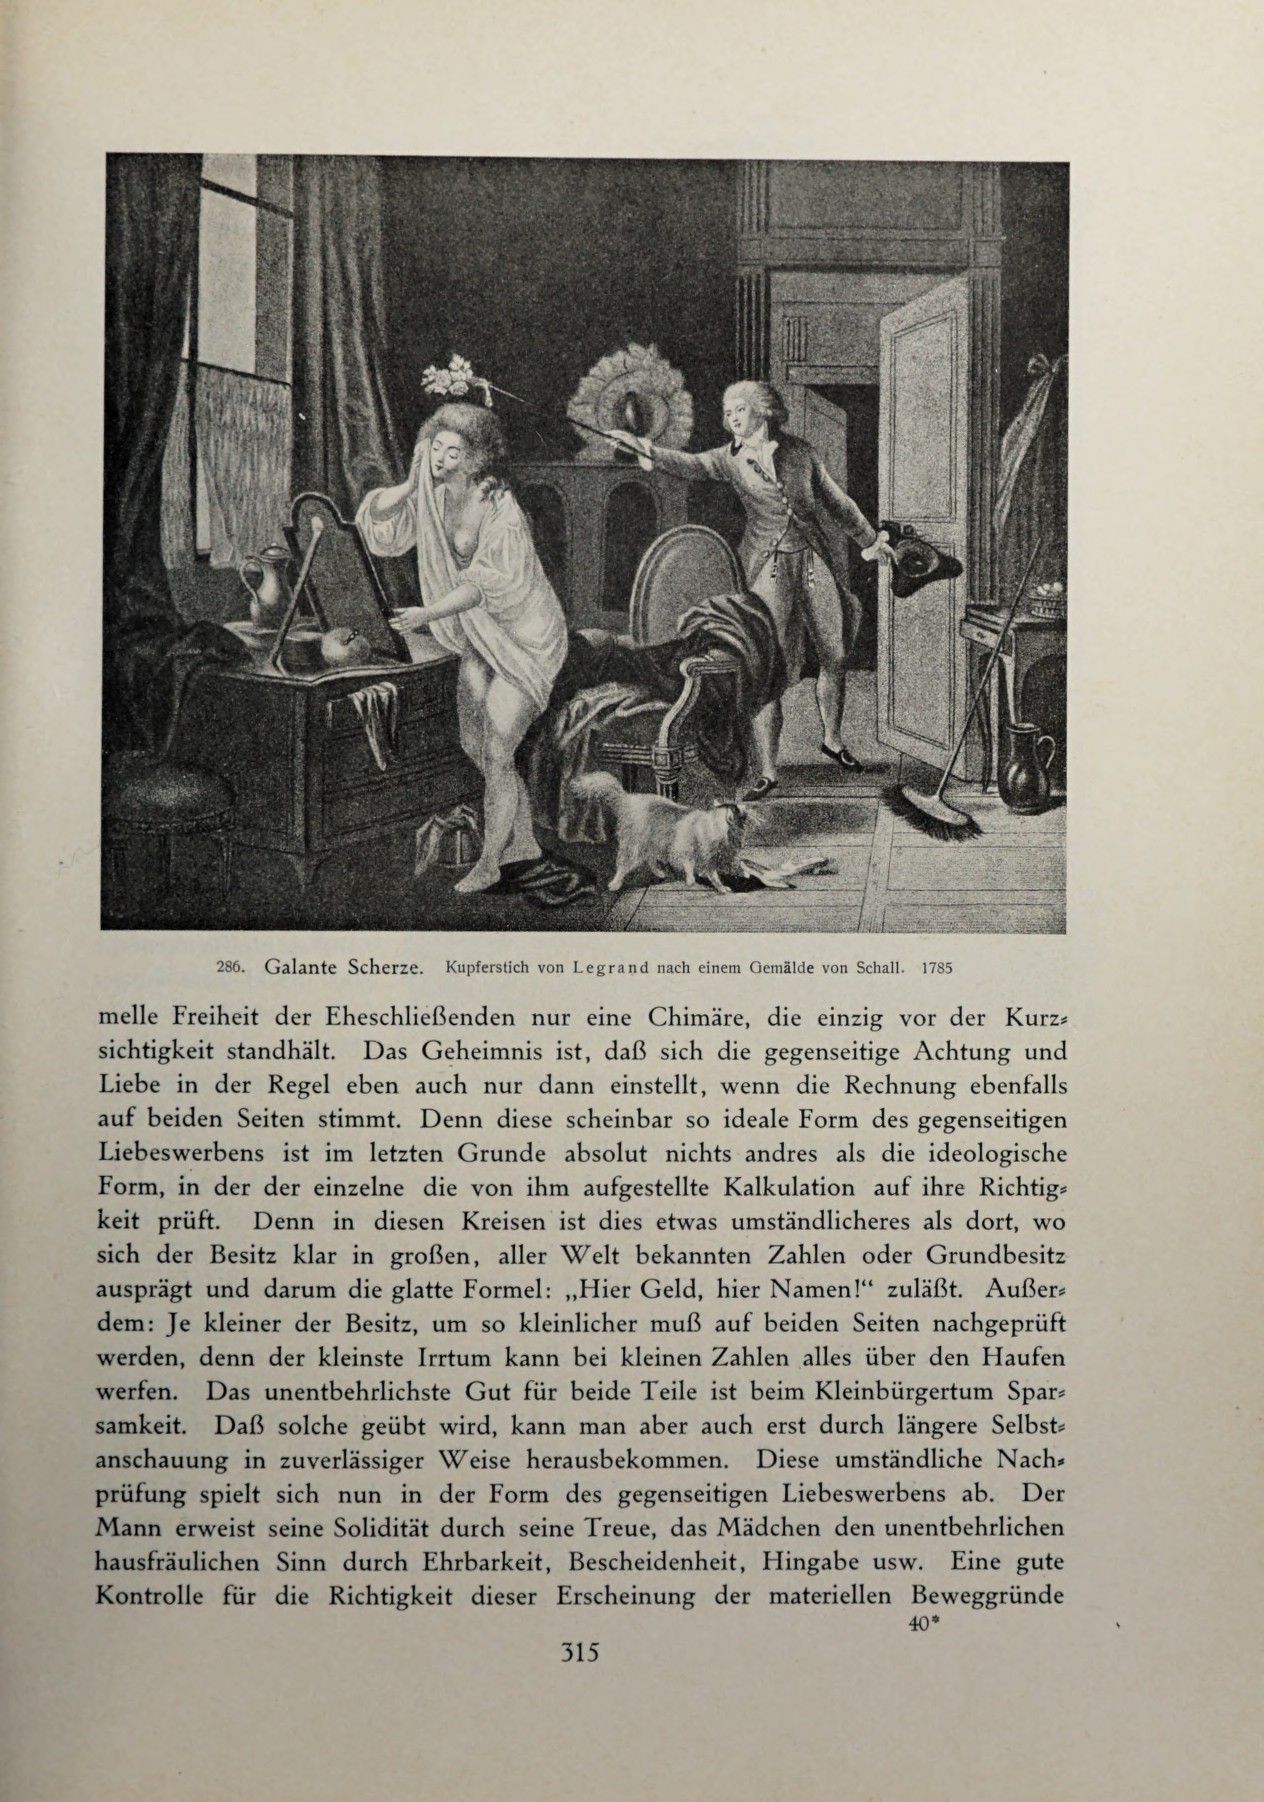 [Eduard Fuchs] Illustrierte Sittengeschichte vom Mittelalter bis zur Gegenwart: Bd. 2. and Ergänzungsband. Die galante Zeit [German] 460